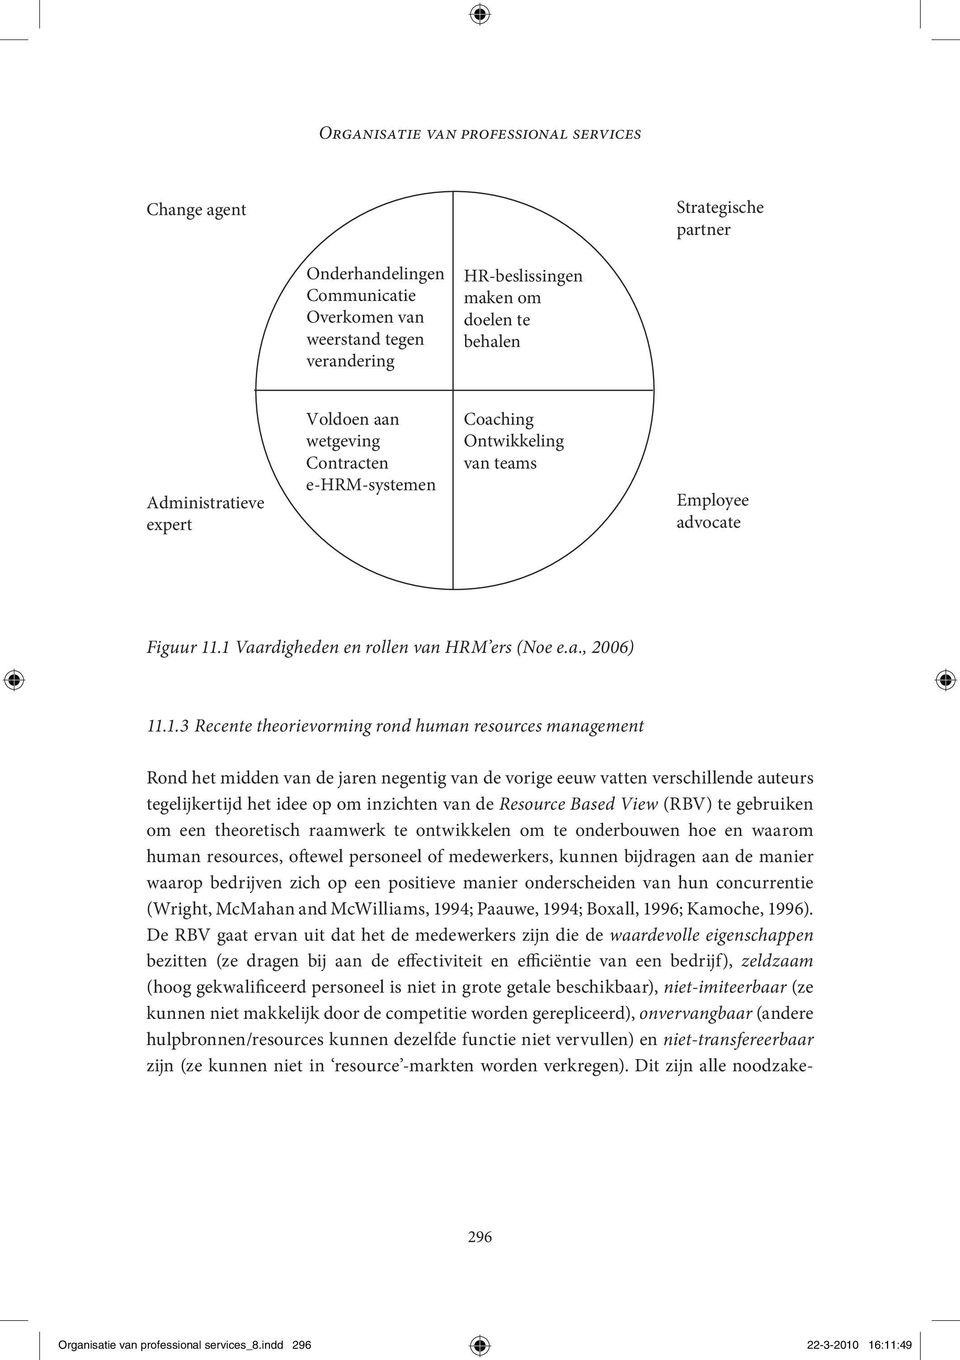 .1 Vaardigheden en rollen van HRM ers (Noe e.a., 2006) 11.1.3 Recente theorievorming rond human resources management Rond het midden van de jaren negentig van de vorige eeuw vatten verschillende